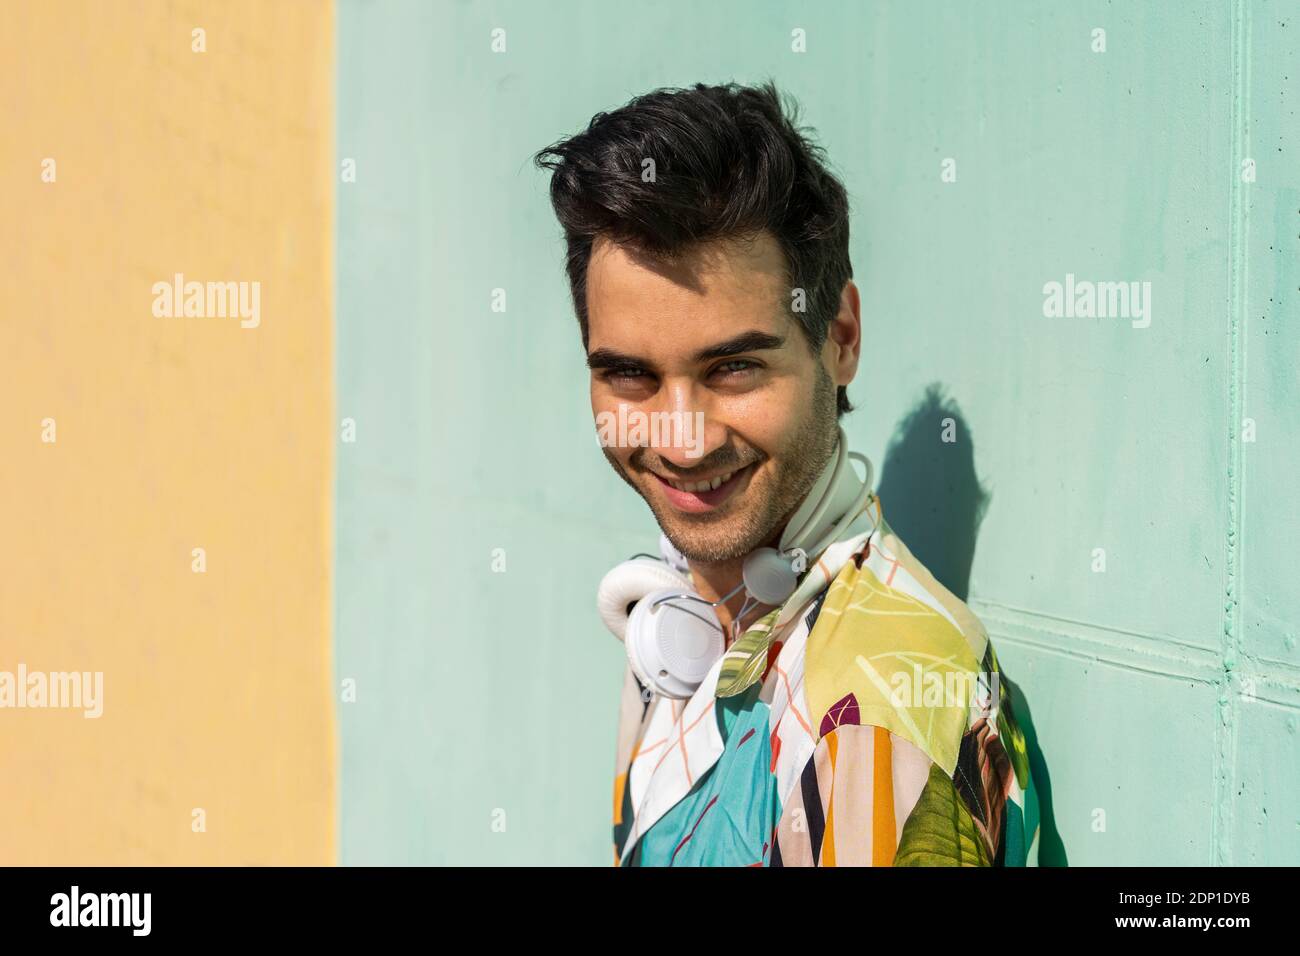 Dunkelhaariger Mann, der vor einer farbenfrohen Wand steht und lächelt Stockfoto